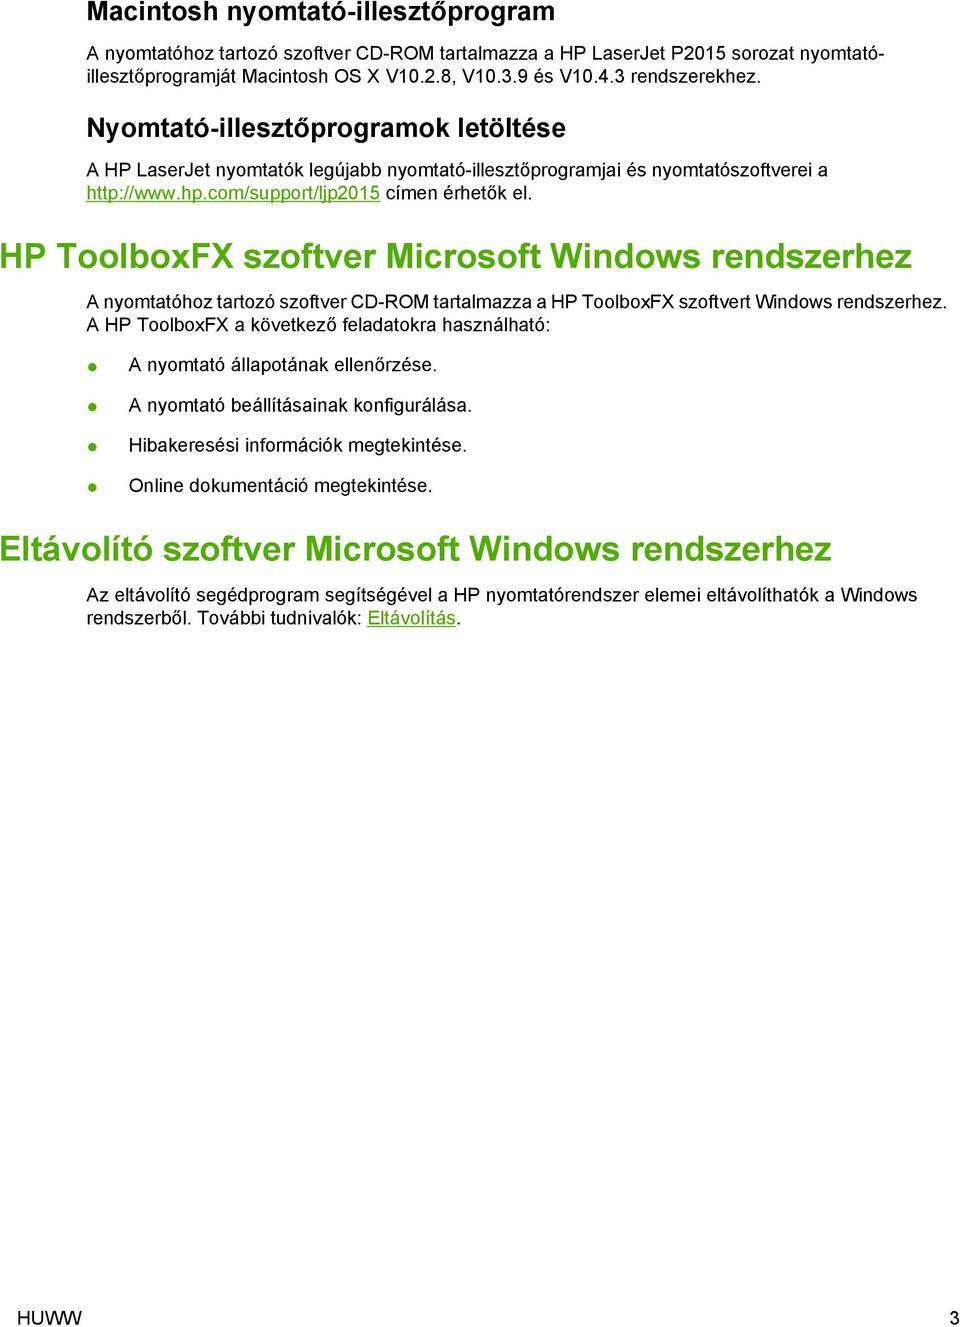 HP ToolboxFX szoftver Microsoft Windows rendszerhez A nyomtatóhoz tartozó szoftver CD-ROM tartalmazza a HP ToolboxFX szoftvert Windows rendszerhez.